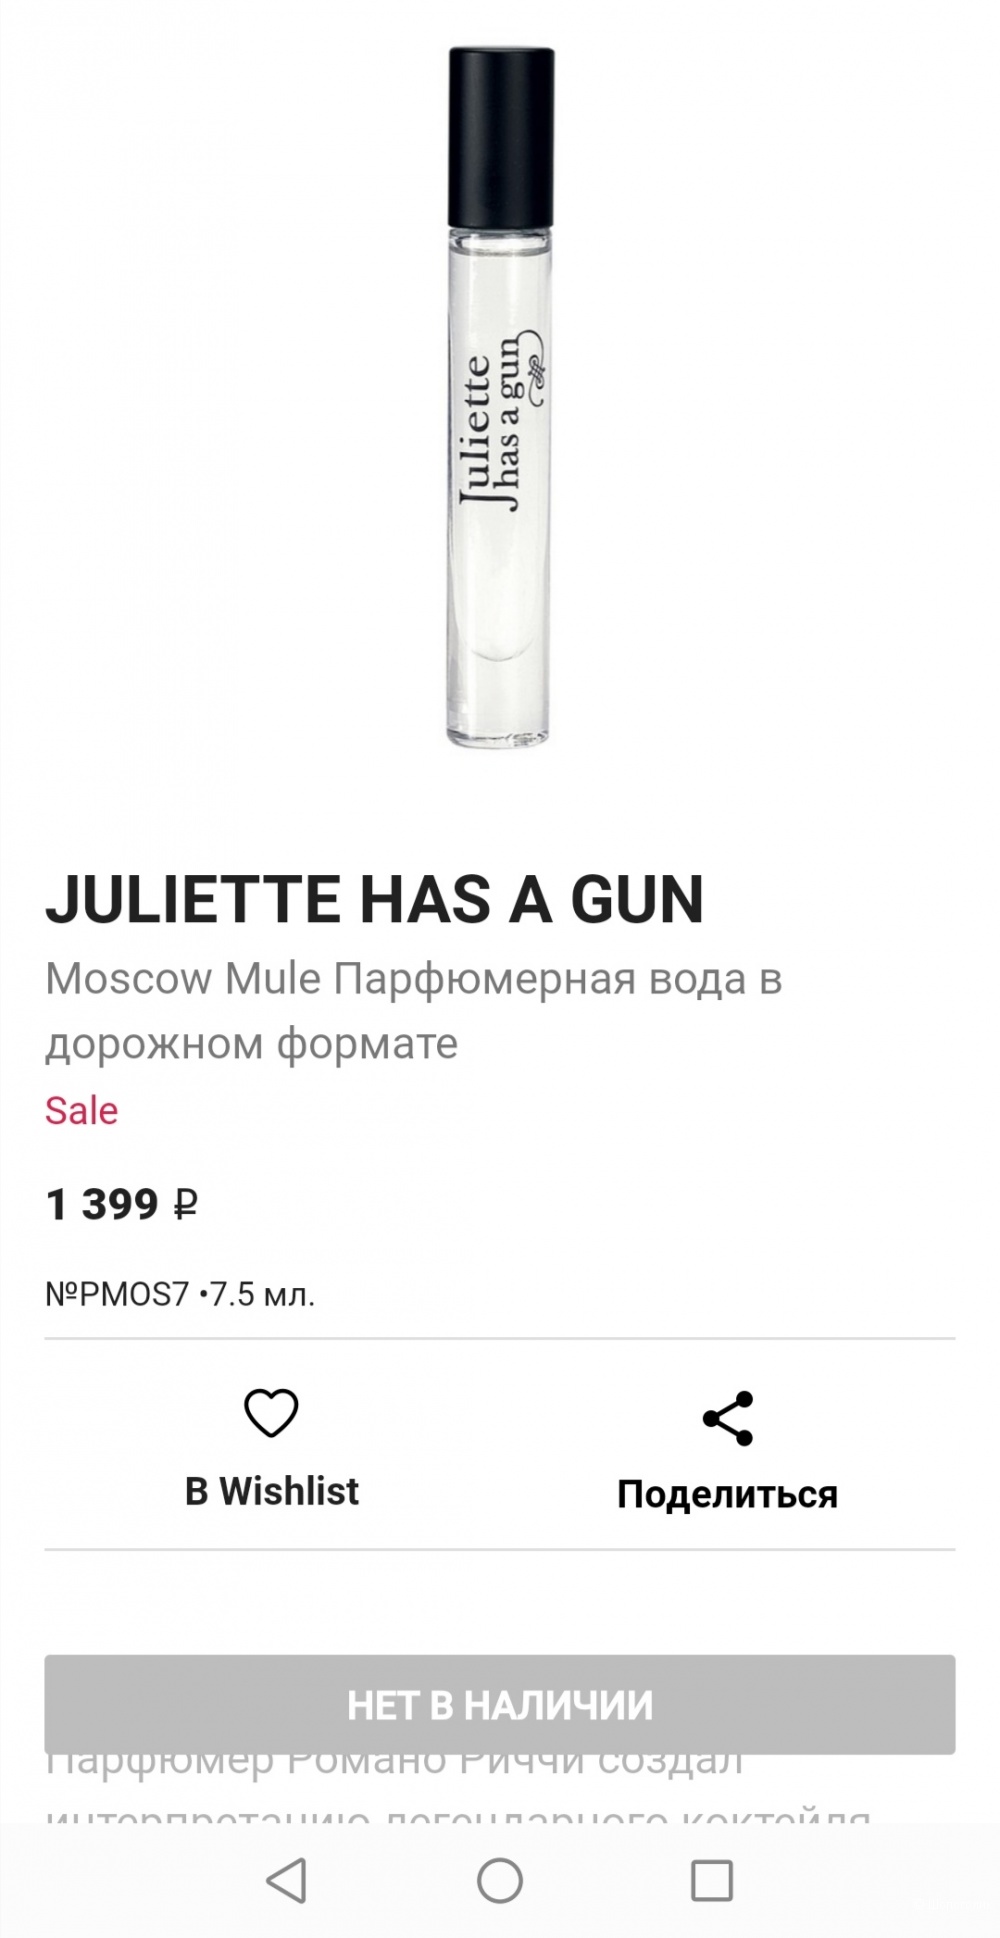 Парфюм Juliette has a gun Lipstick fever объем 5 мл